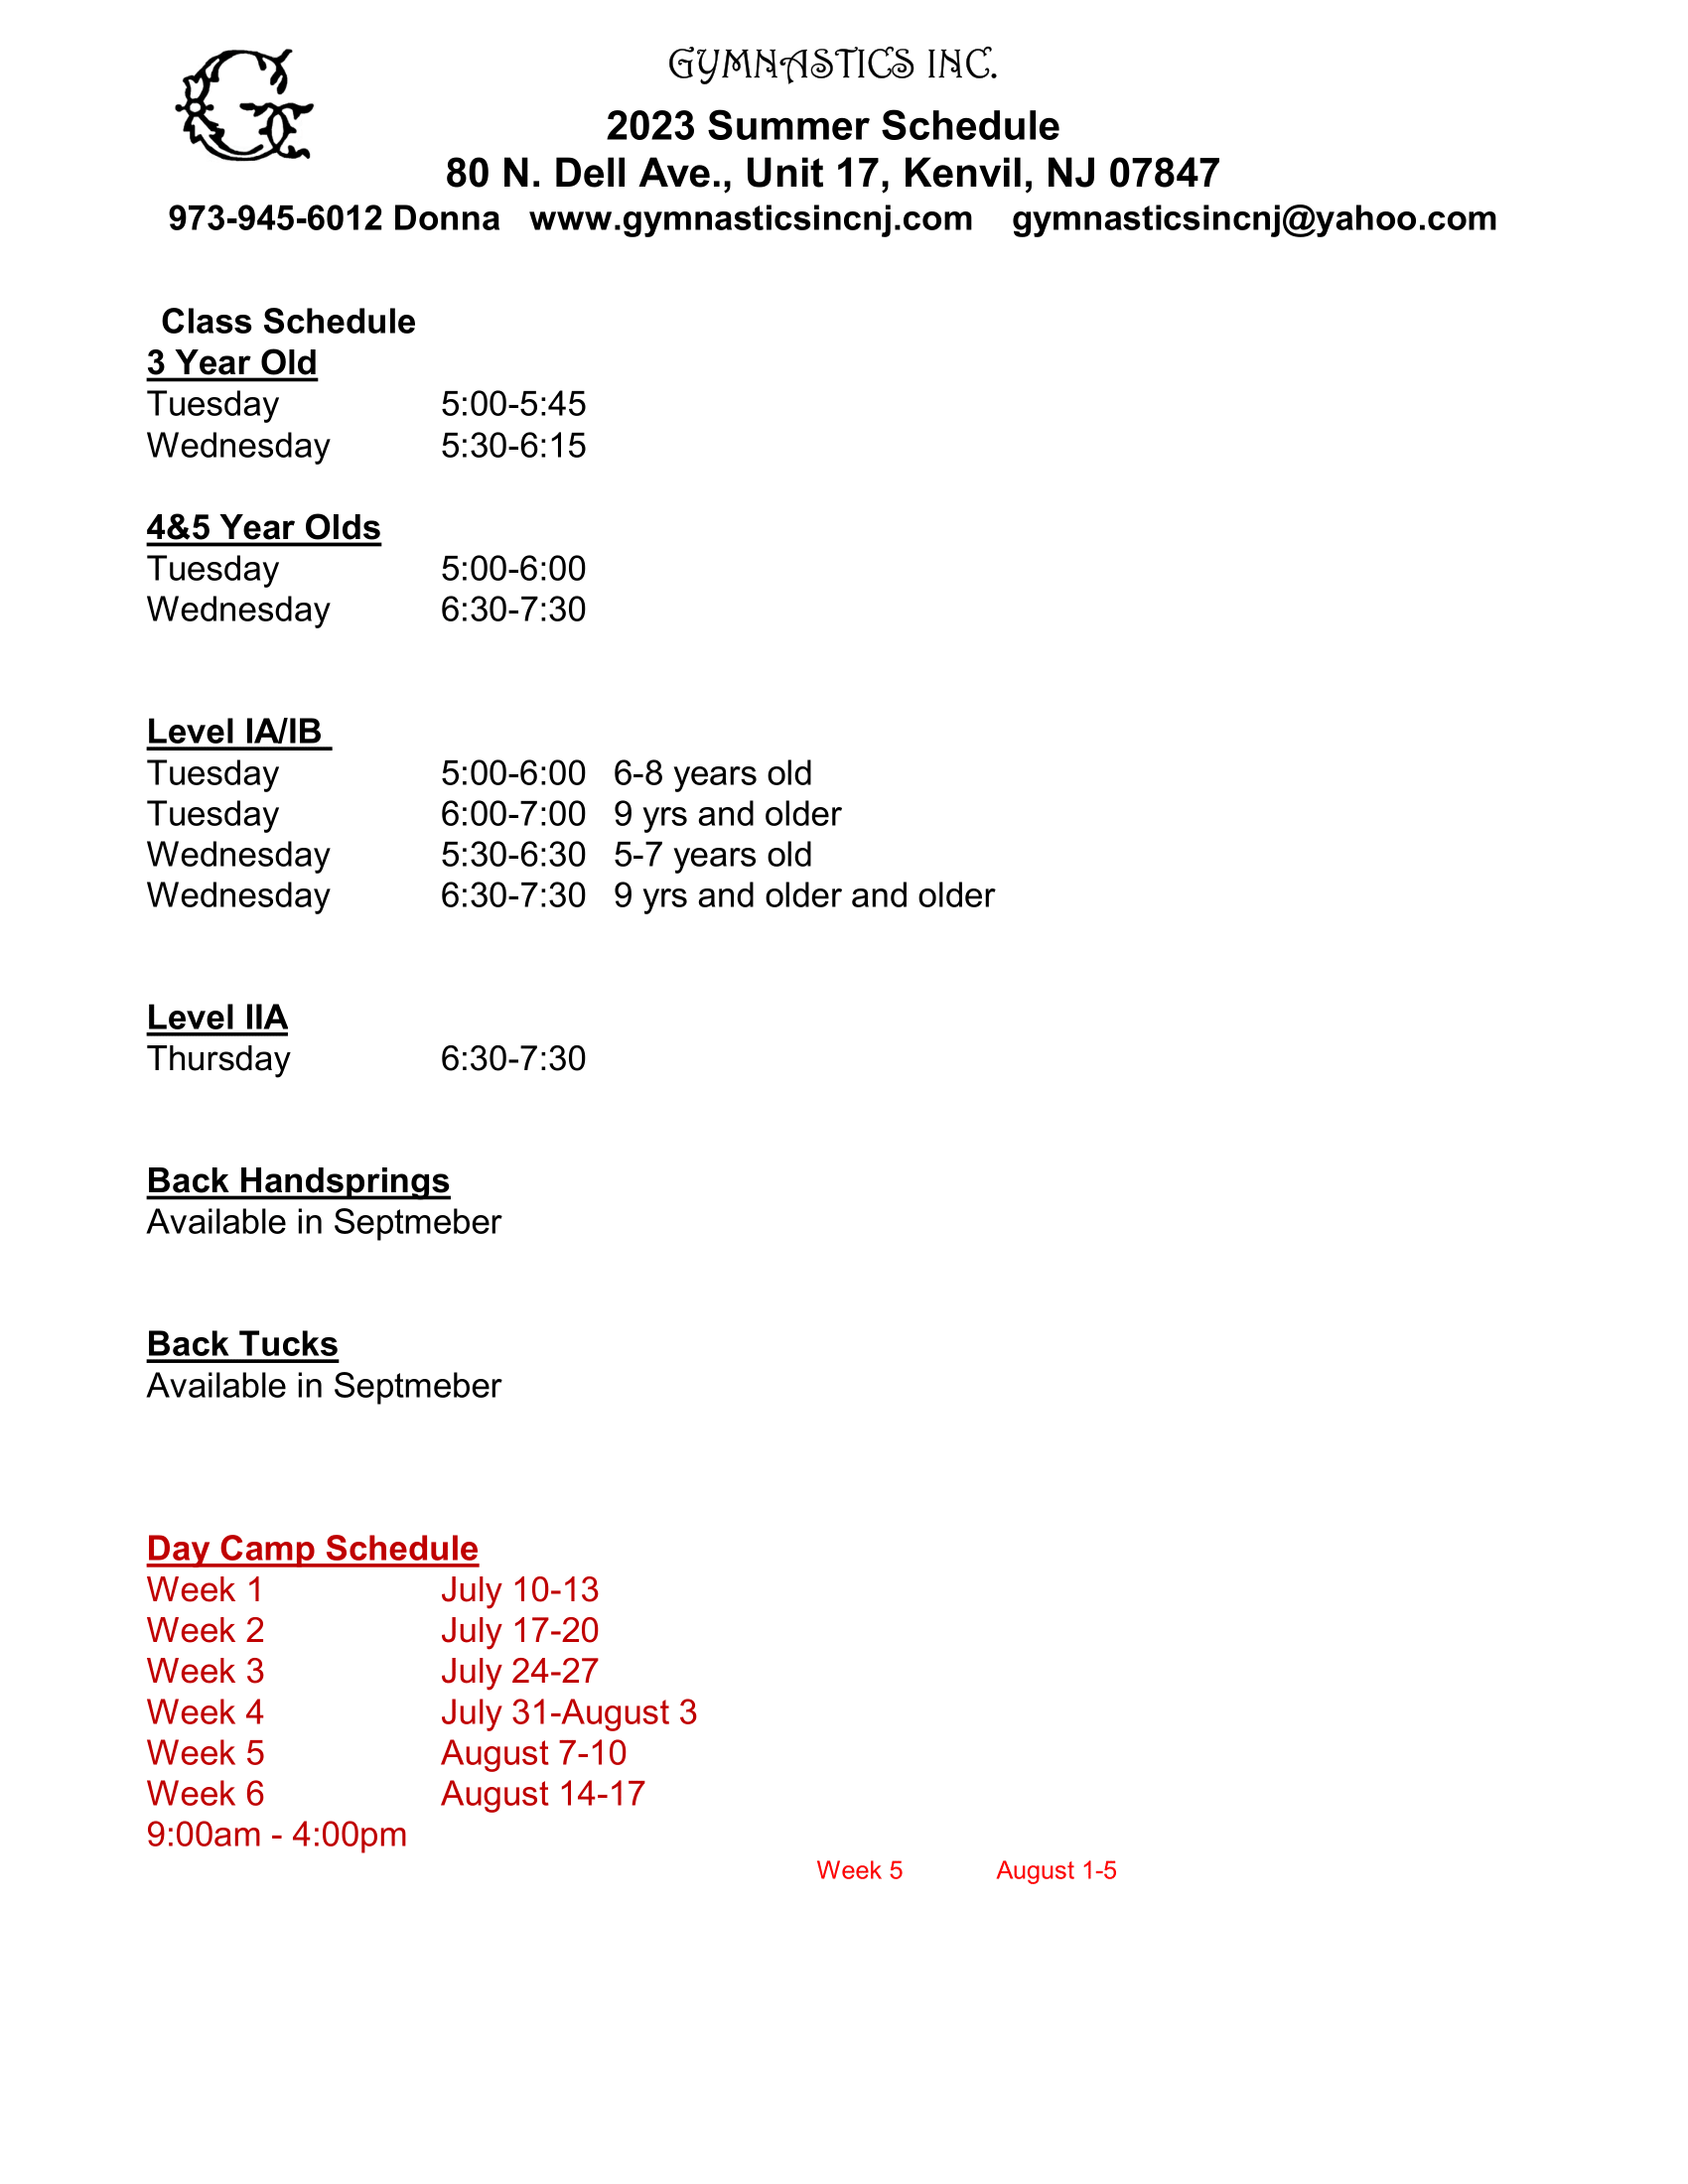 gym inc summer schedule 1